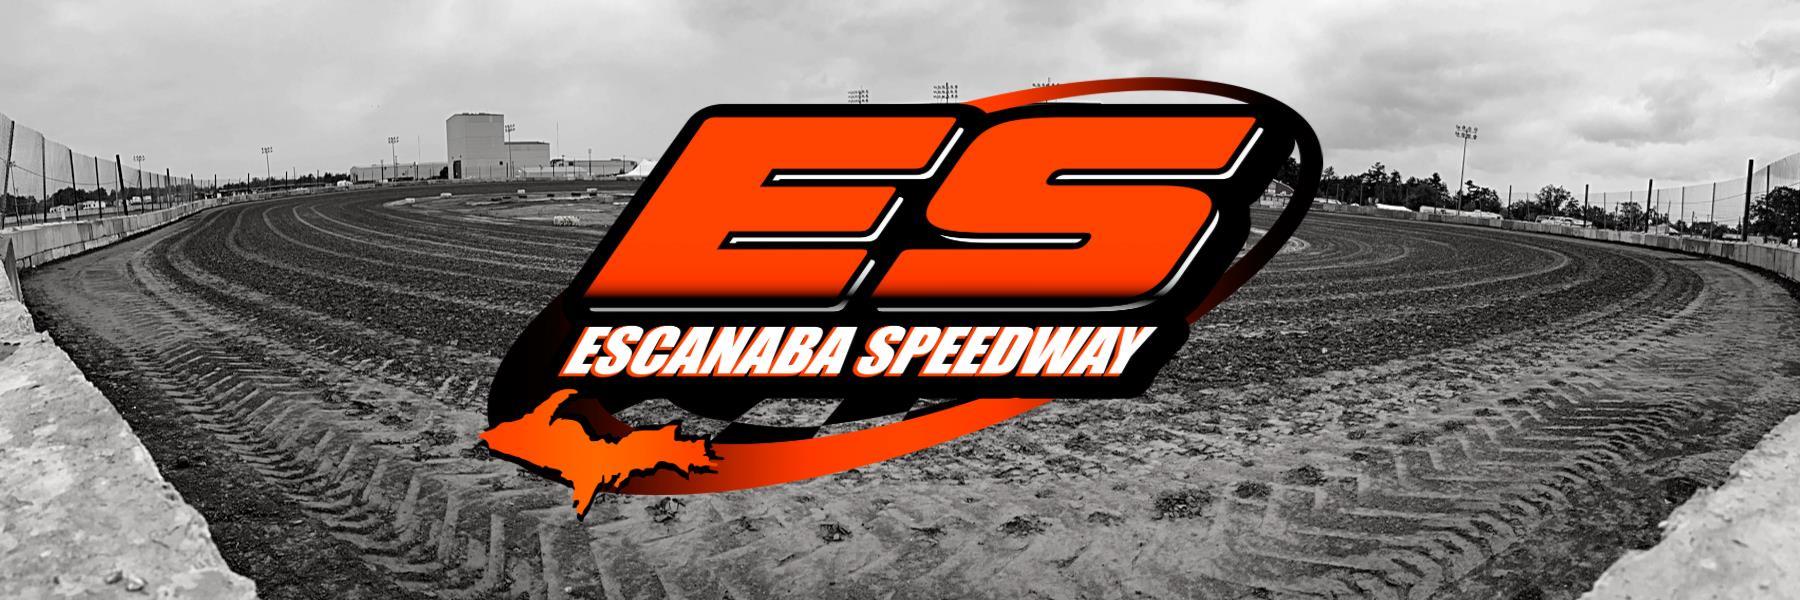 6/5/2022 - Escanaba Speedway